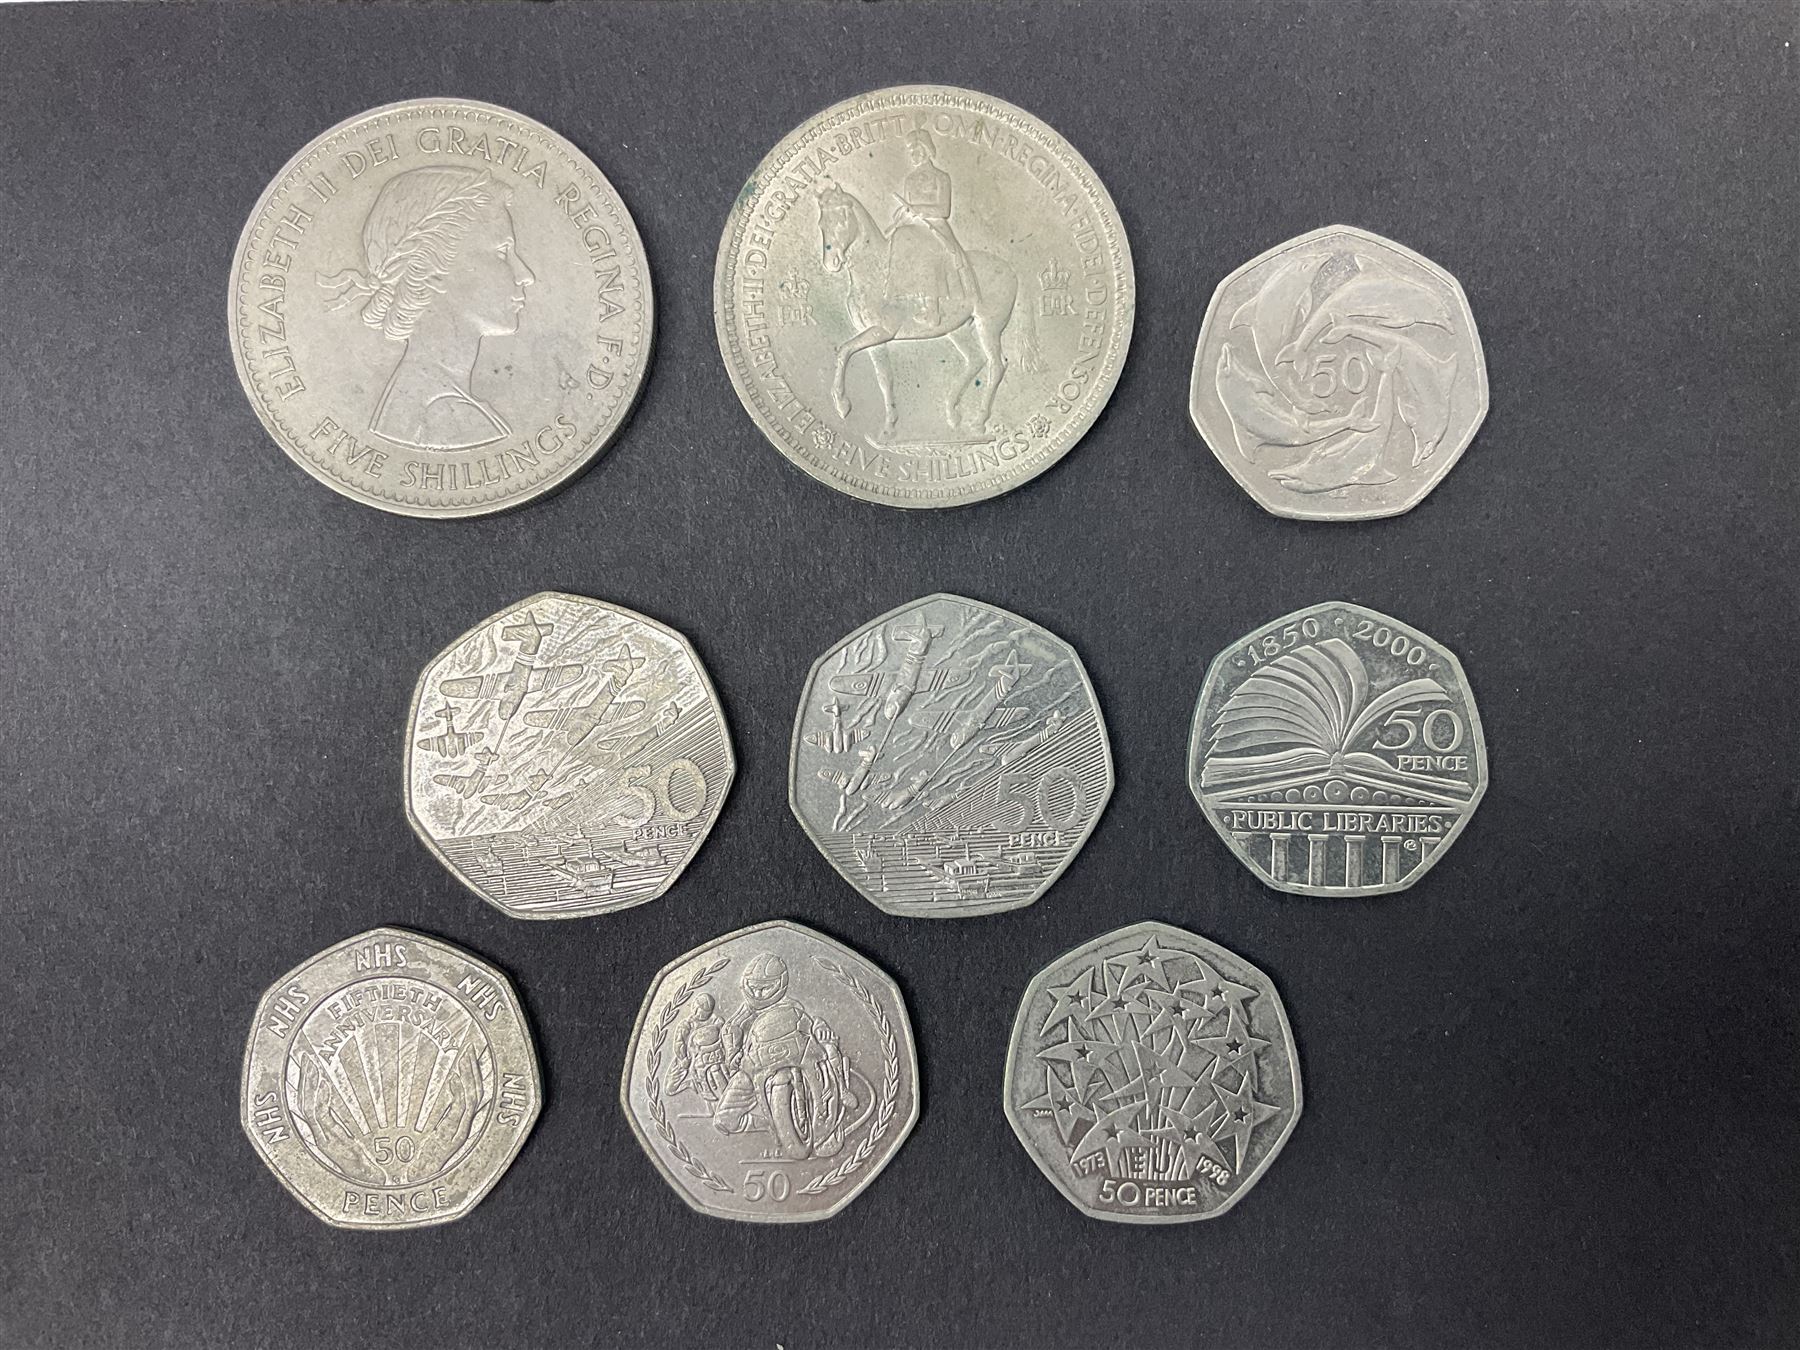 Queen Elizabeth II commemorative coins - Image 2 of 3